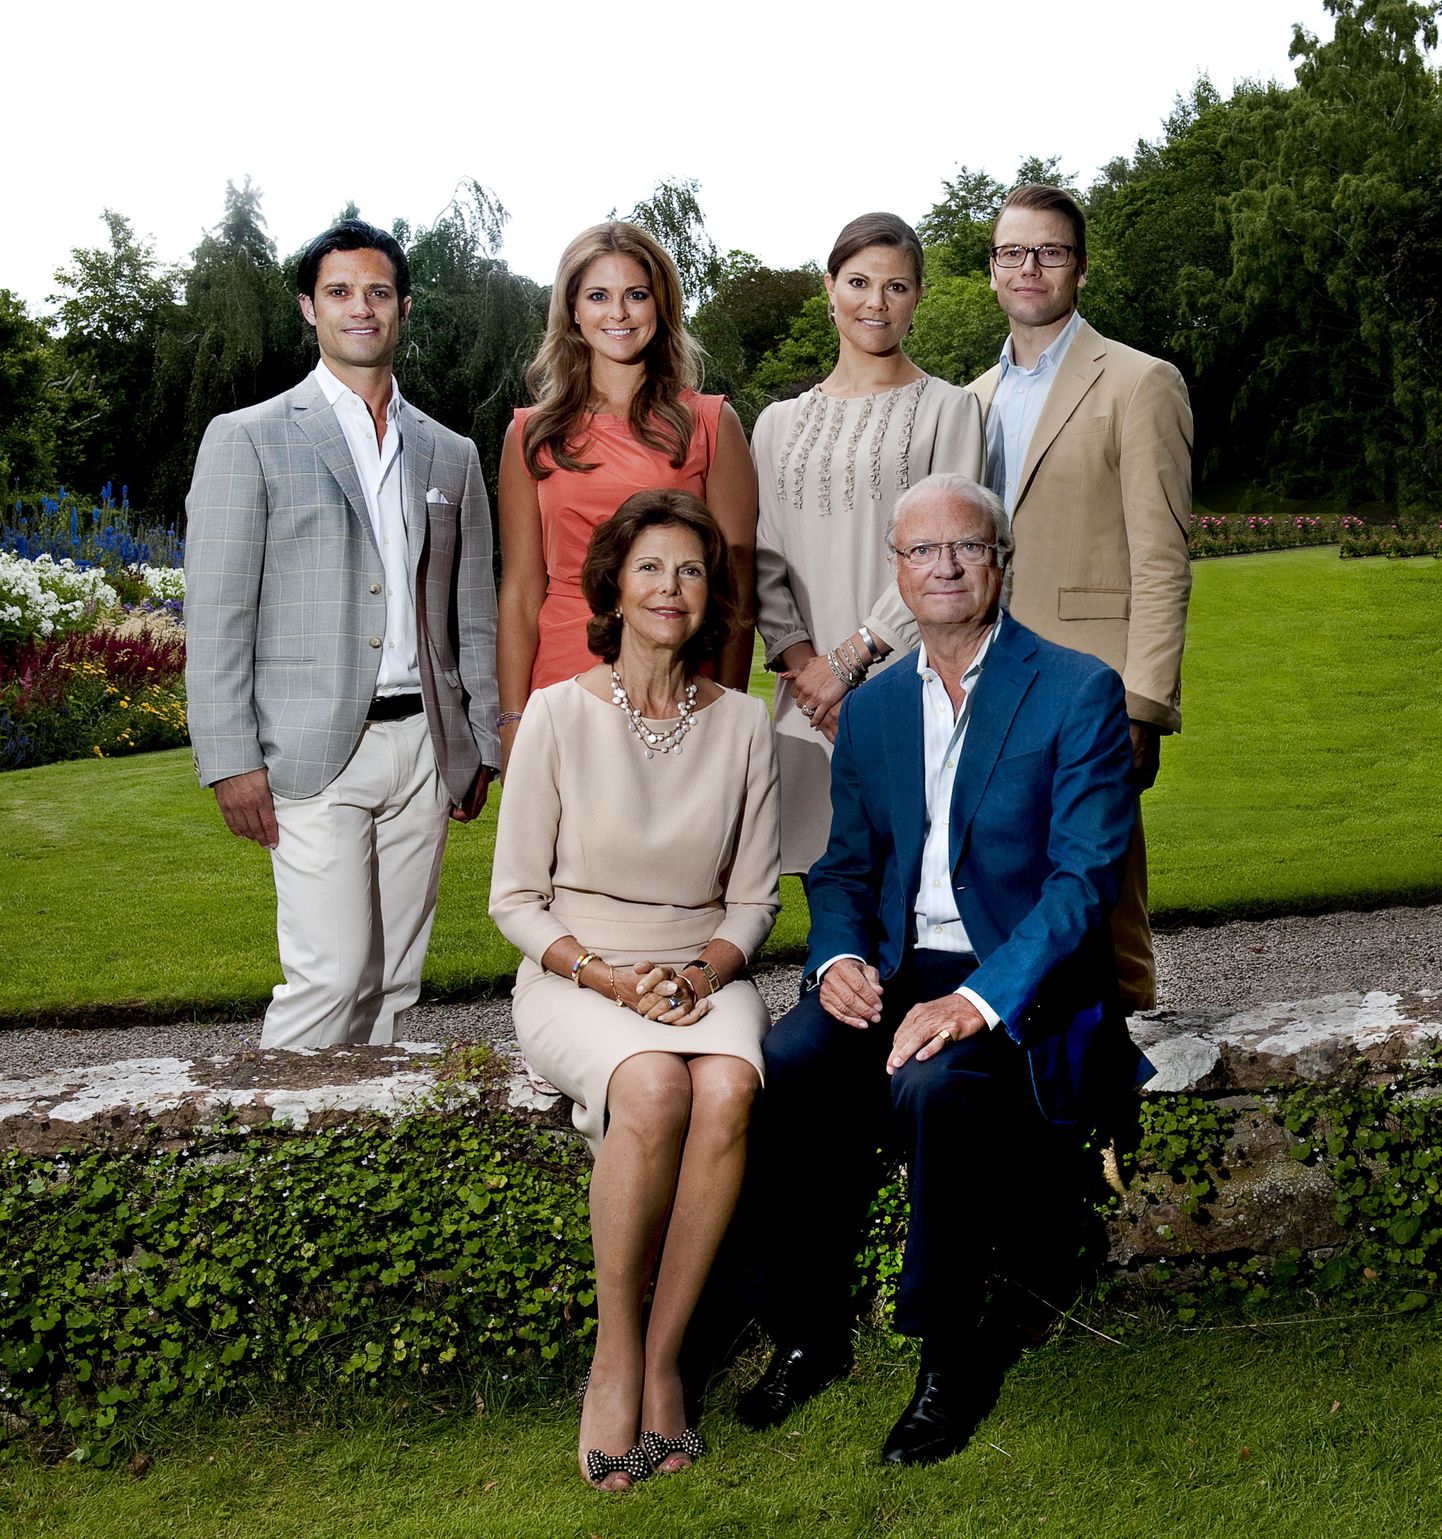 Rootsi kuninglik perekond: prints Carl Philip, printsess Madeleine,kroonprintsess Victoria, prints Daniel, kuninganna Silvia ja kuningas Carl XVI Gustaf